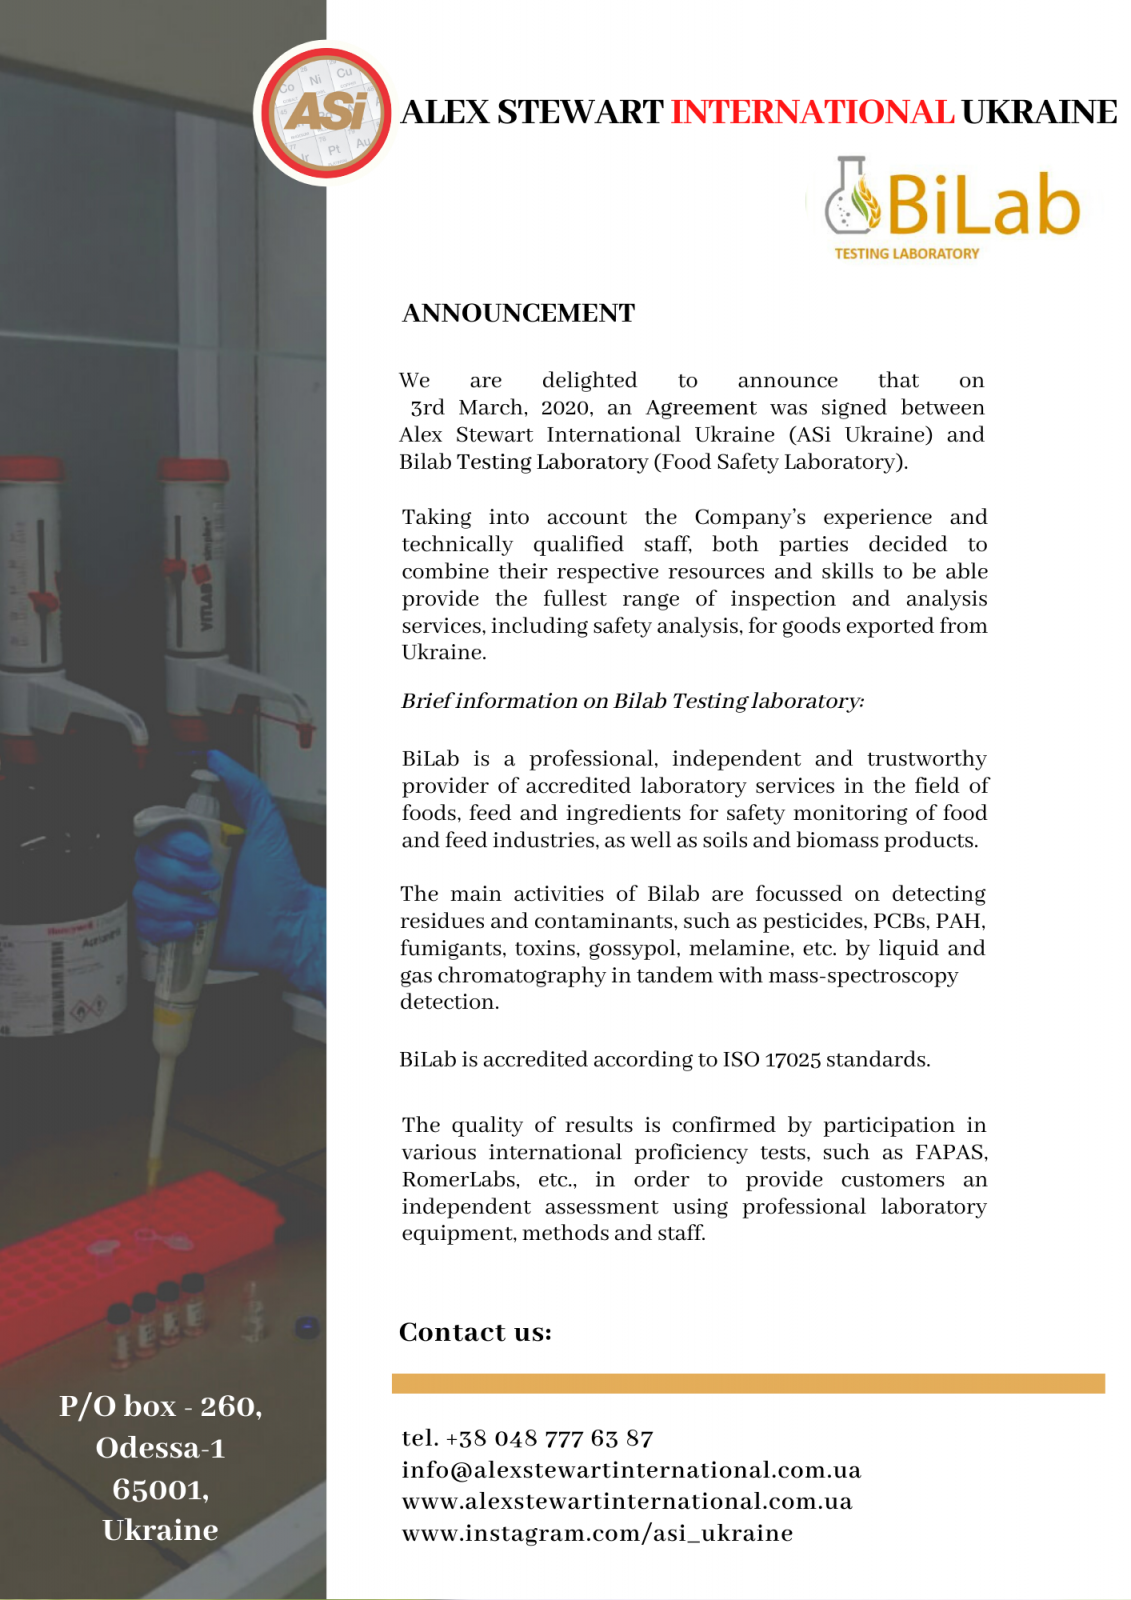 Соглашение между Alex Stewart International Ukraine (ASi Ukraine) и Испытательной лабораторией BiLab (Лаборатория Пищевой Безопасности)